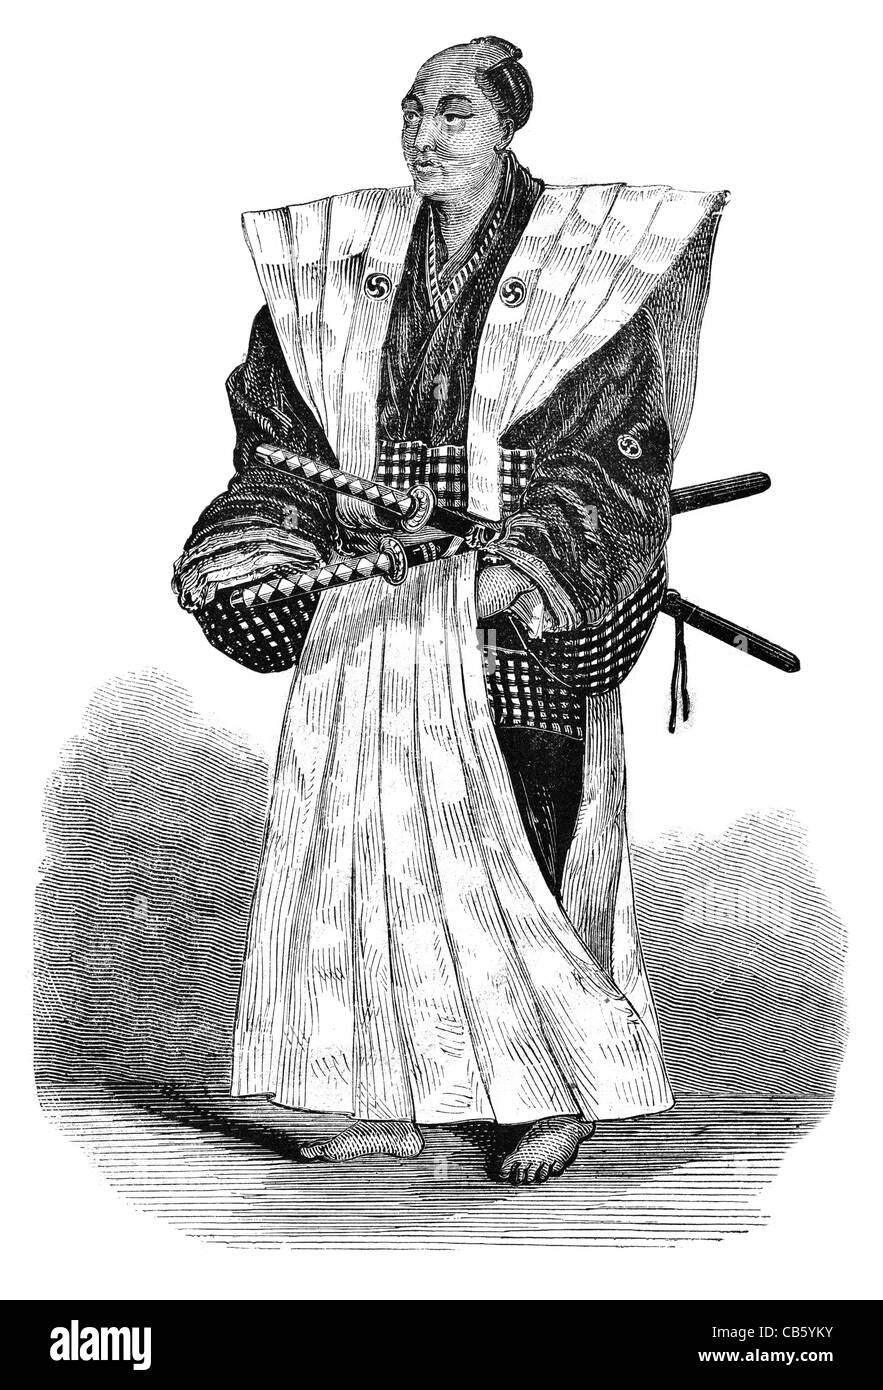 Noble noble guerrier japonais traditionnel Japon honnête costume dress épée samouraï politic Banque D'Images